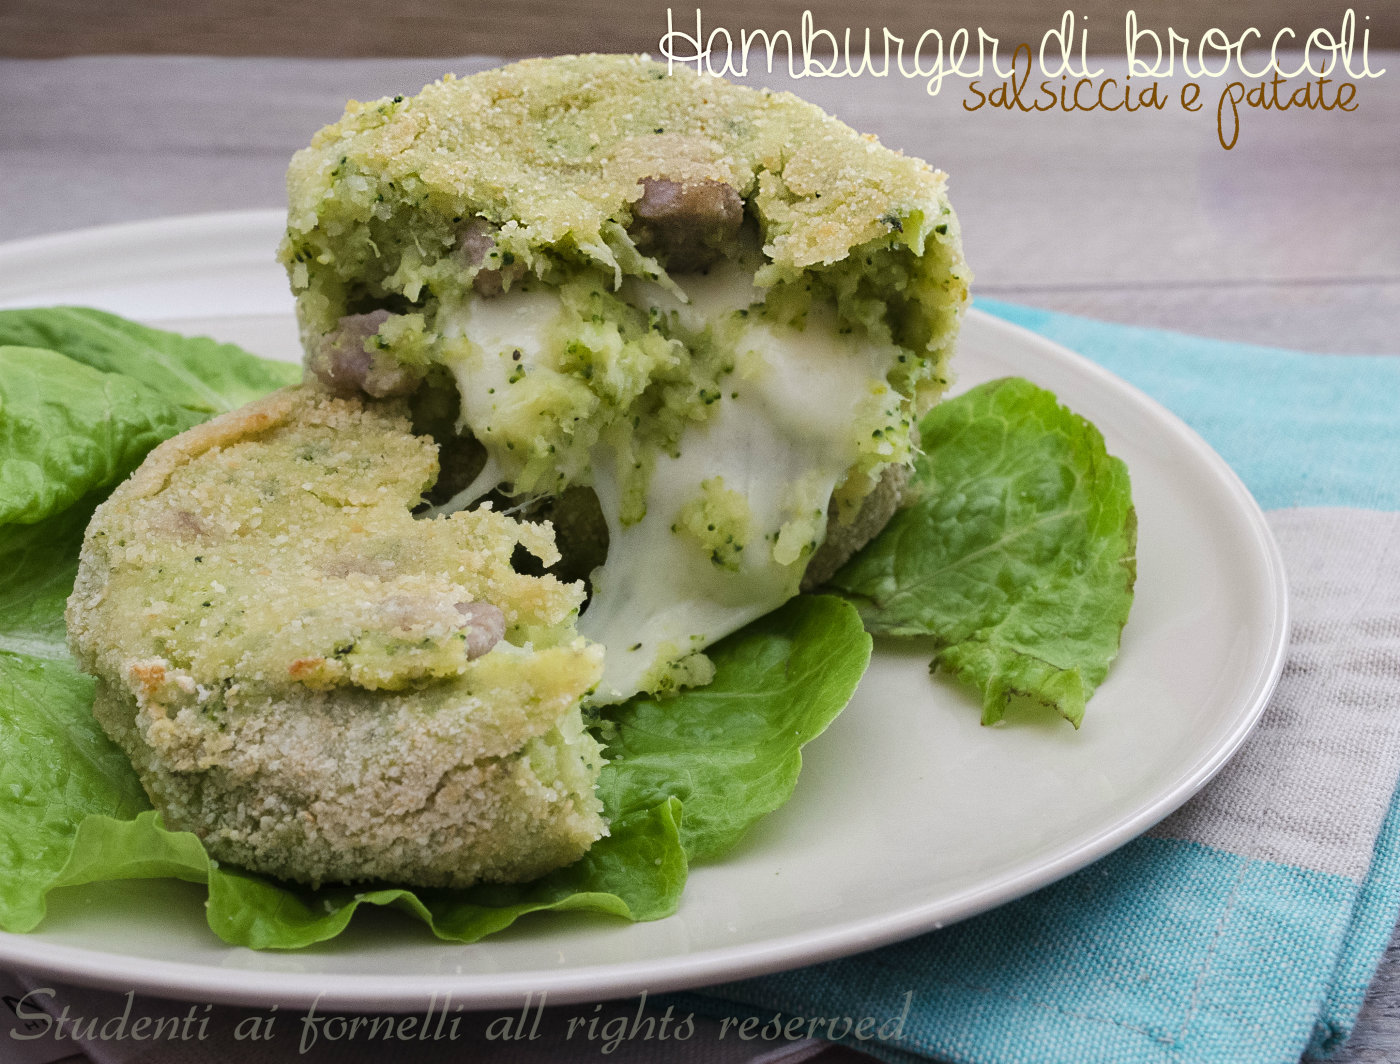 hmburger di broccoli salsiccia e patate con scamorza filante cotti in forno ricetta leggera e gustosa